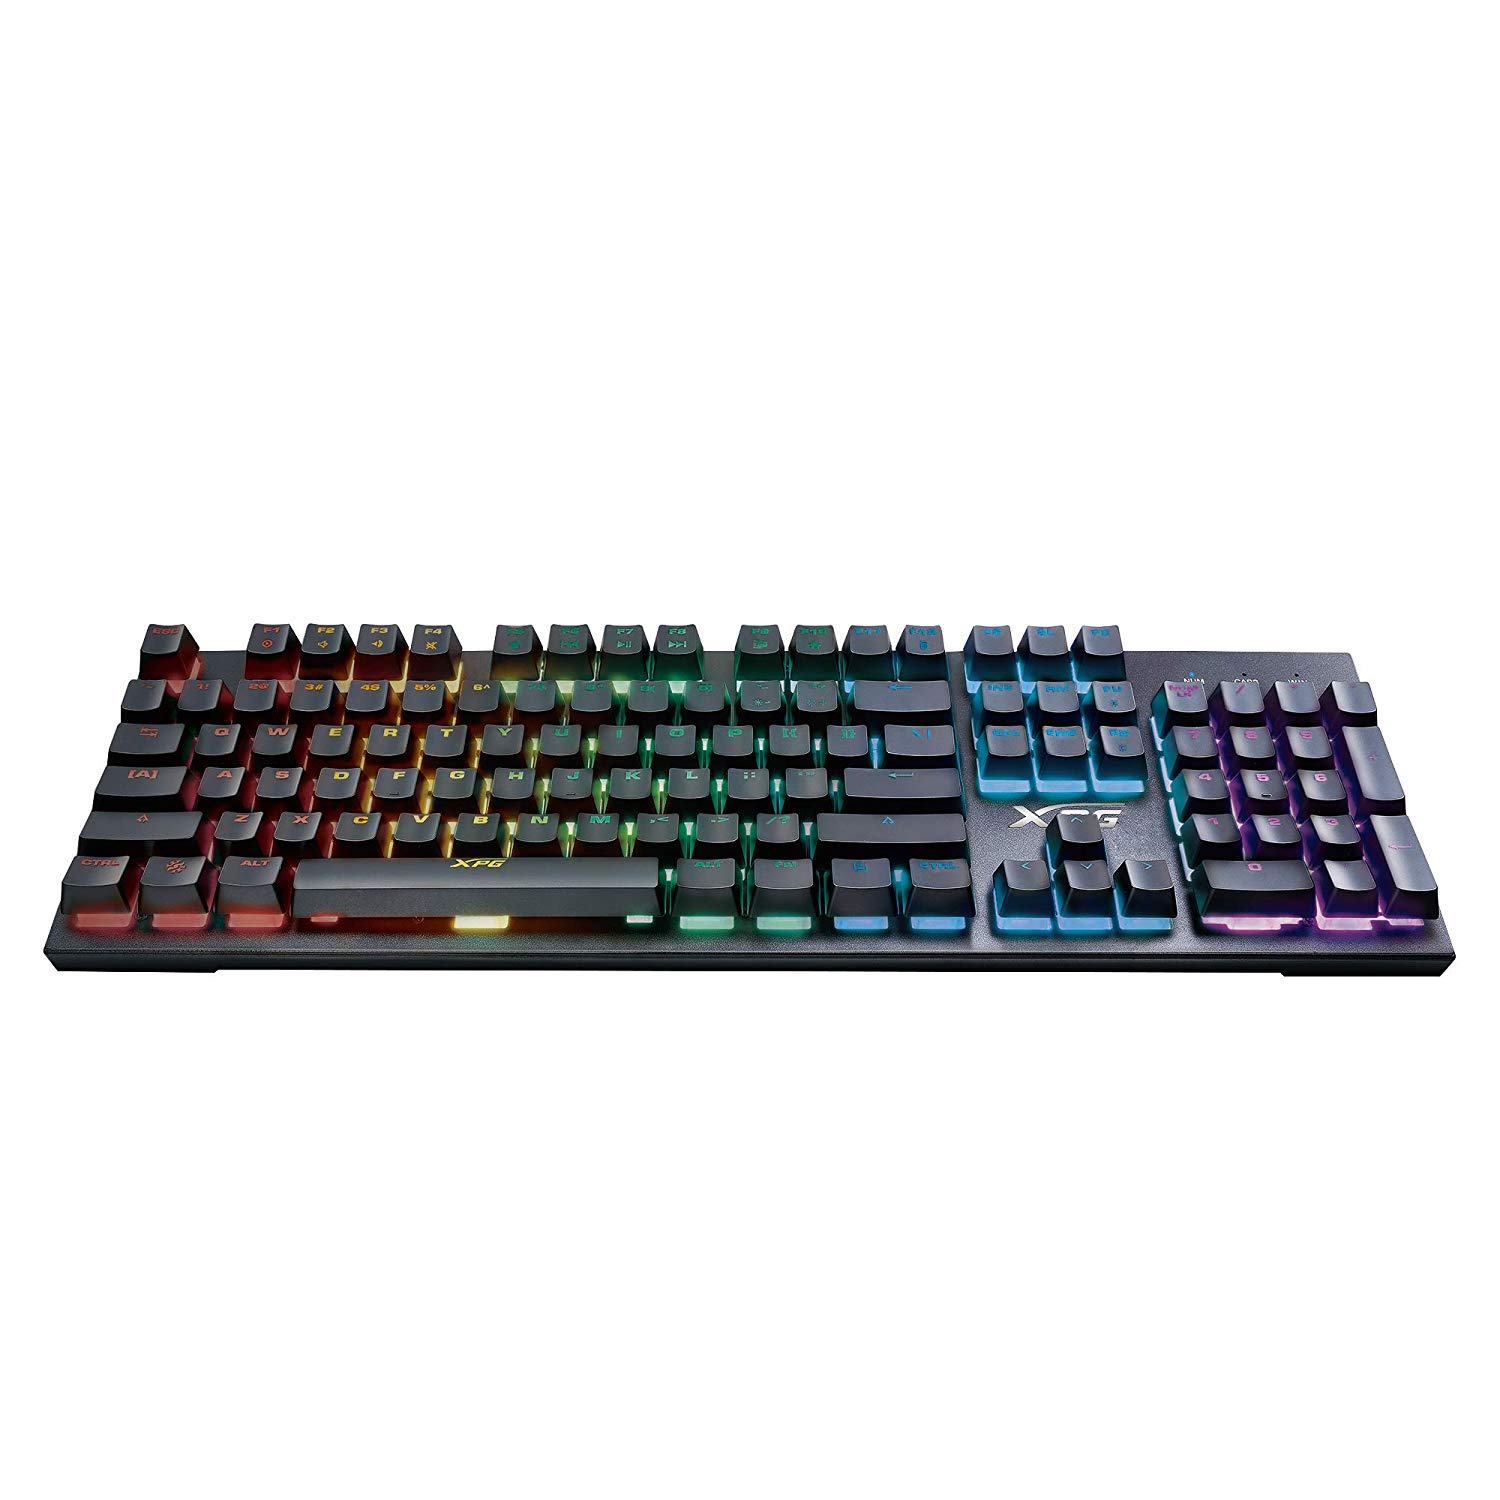 XPG INFAREX K10 RGB Mechanical Gaming Keyboard